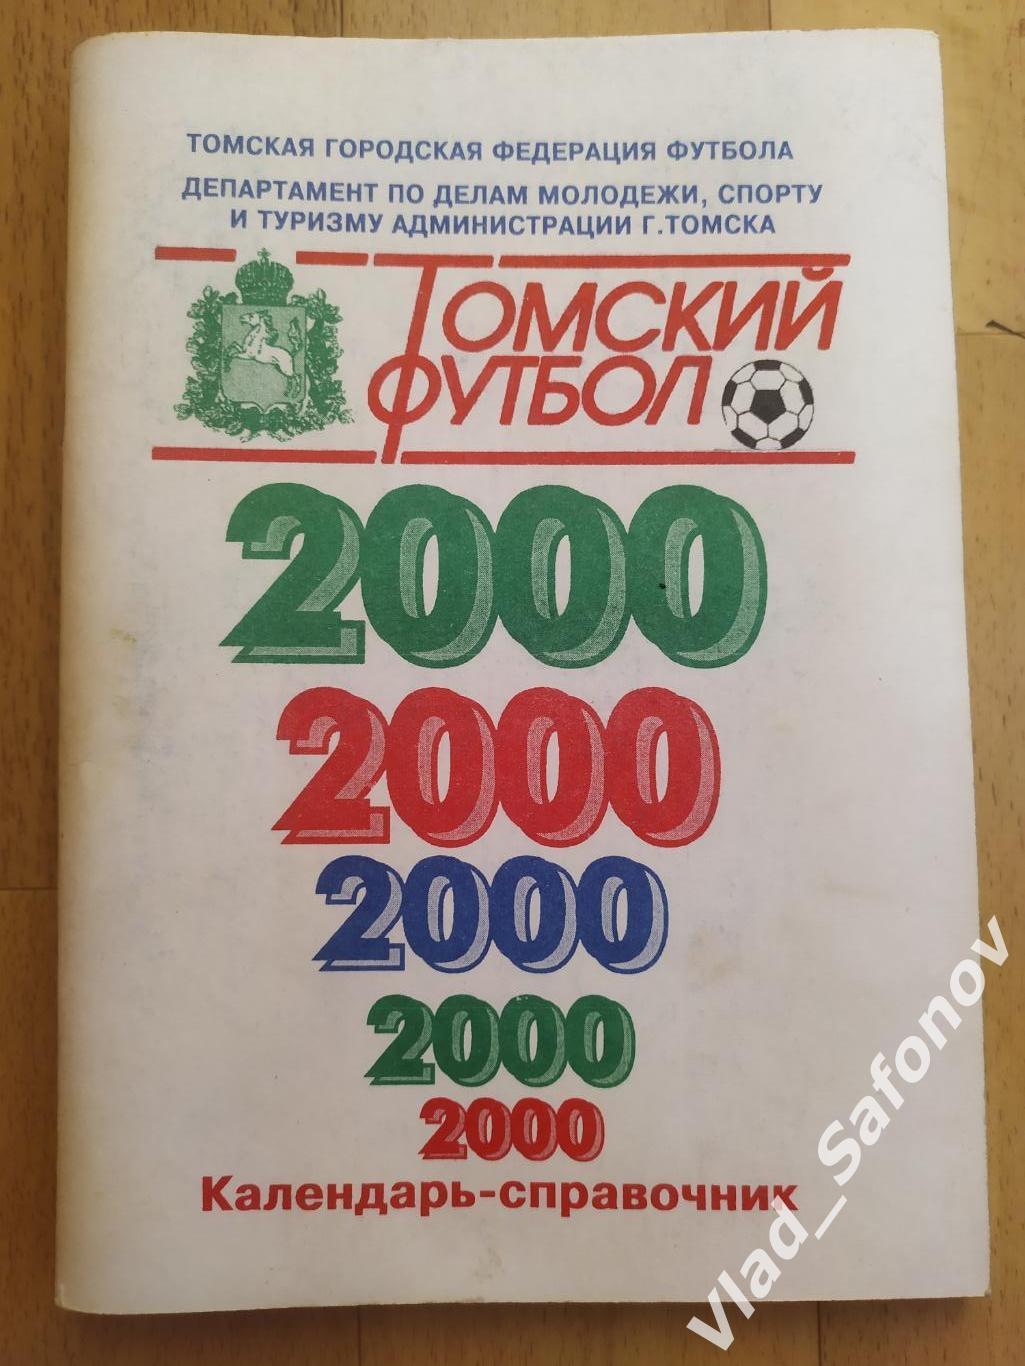 Календарь справочник.Томский футбол 2000. Томск.